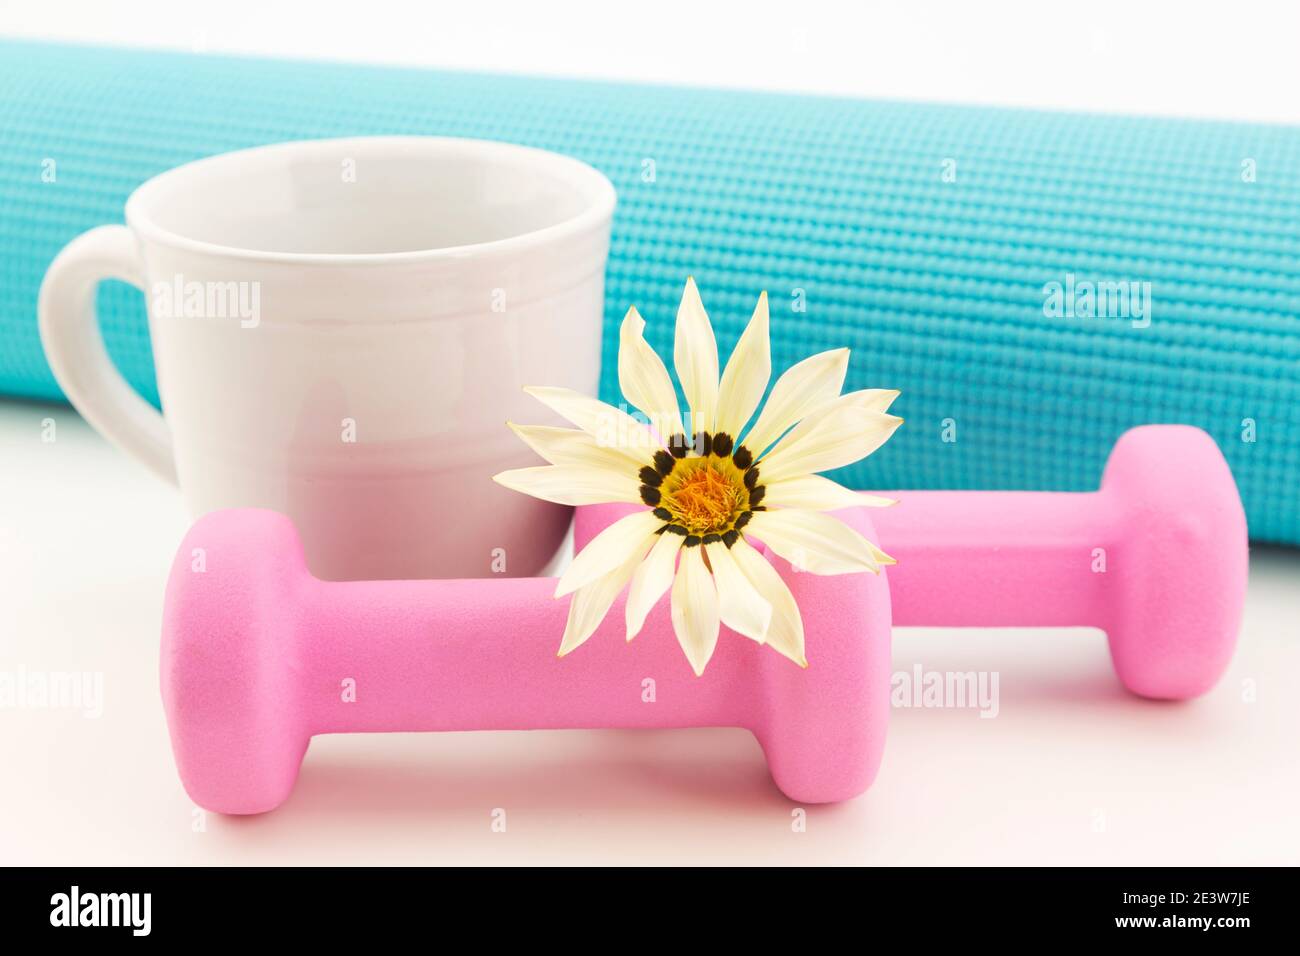 Zu Hause Fitness Stillleben von weißen Gänseblümchen und Becher, rosa Gewichte und türkisfarbene Yoga-Matte in Nahaufnahme von gesunden, persönlichen Übungen Stockfoto